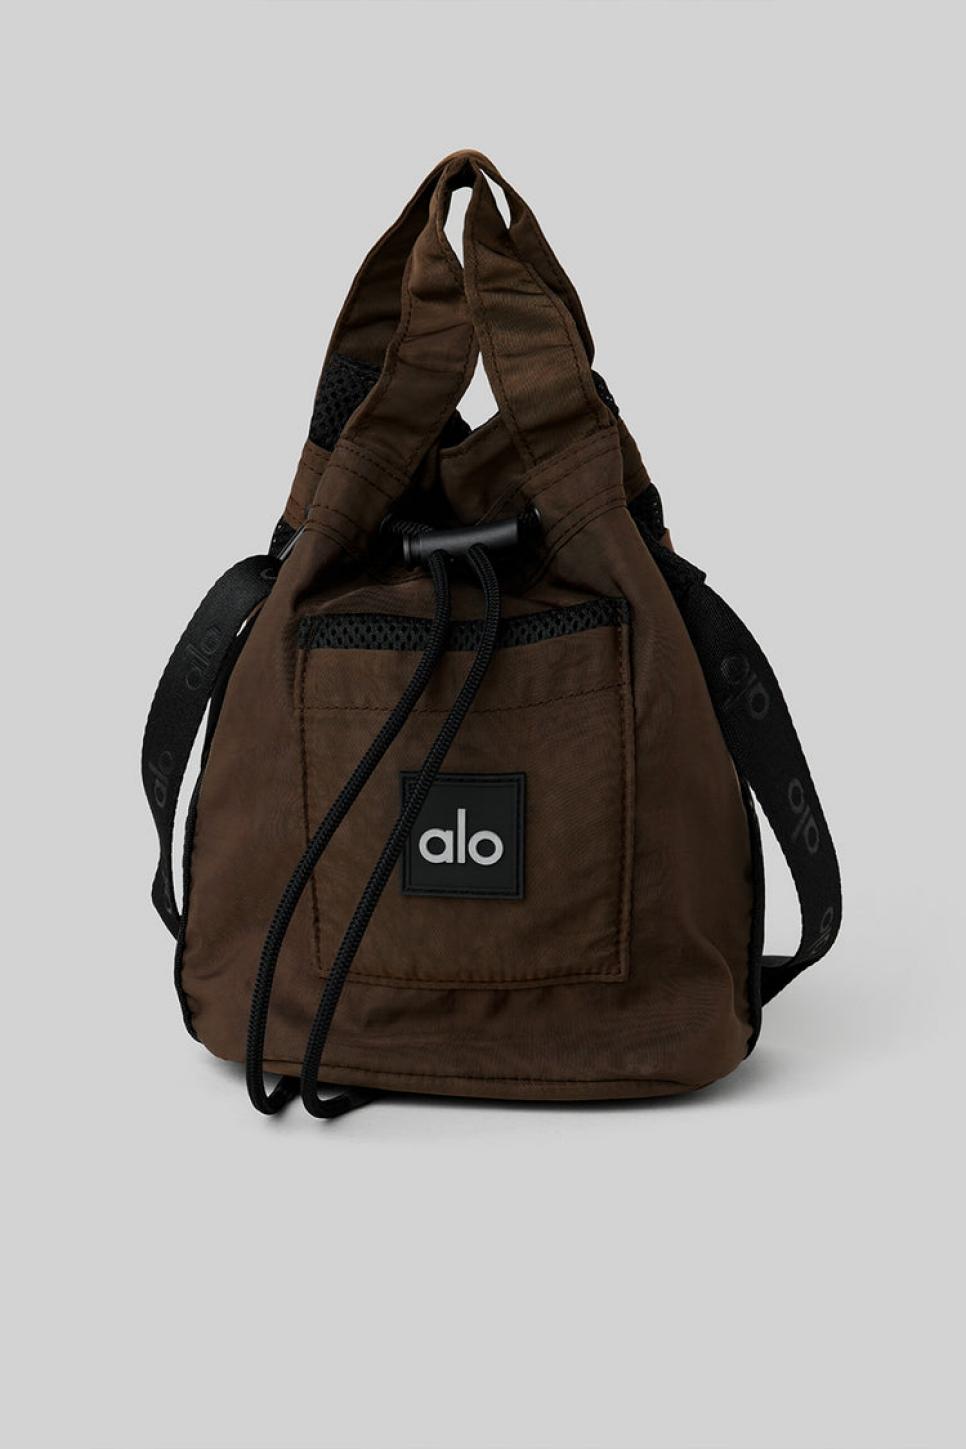 Alo Yoga Crossbody Bucket Bag